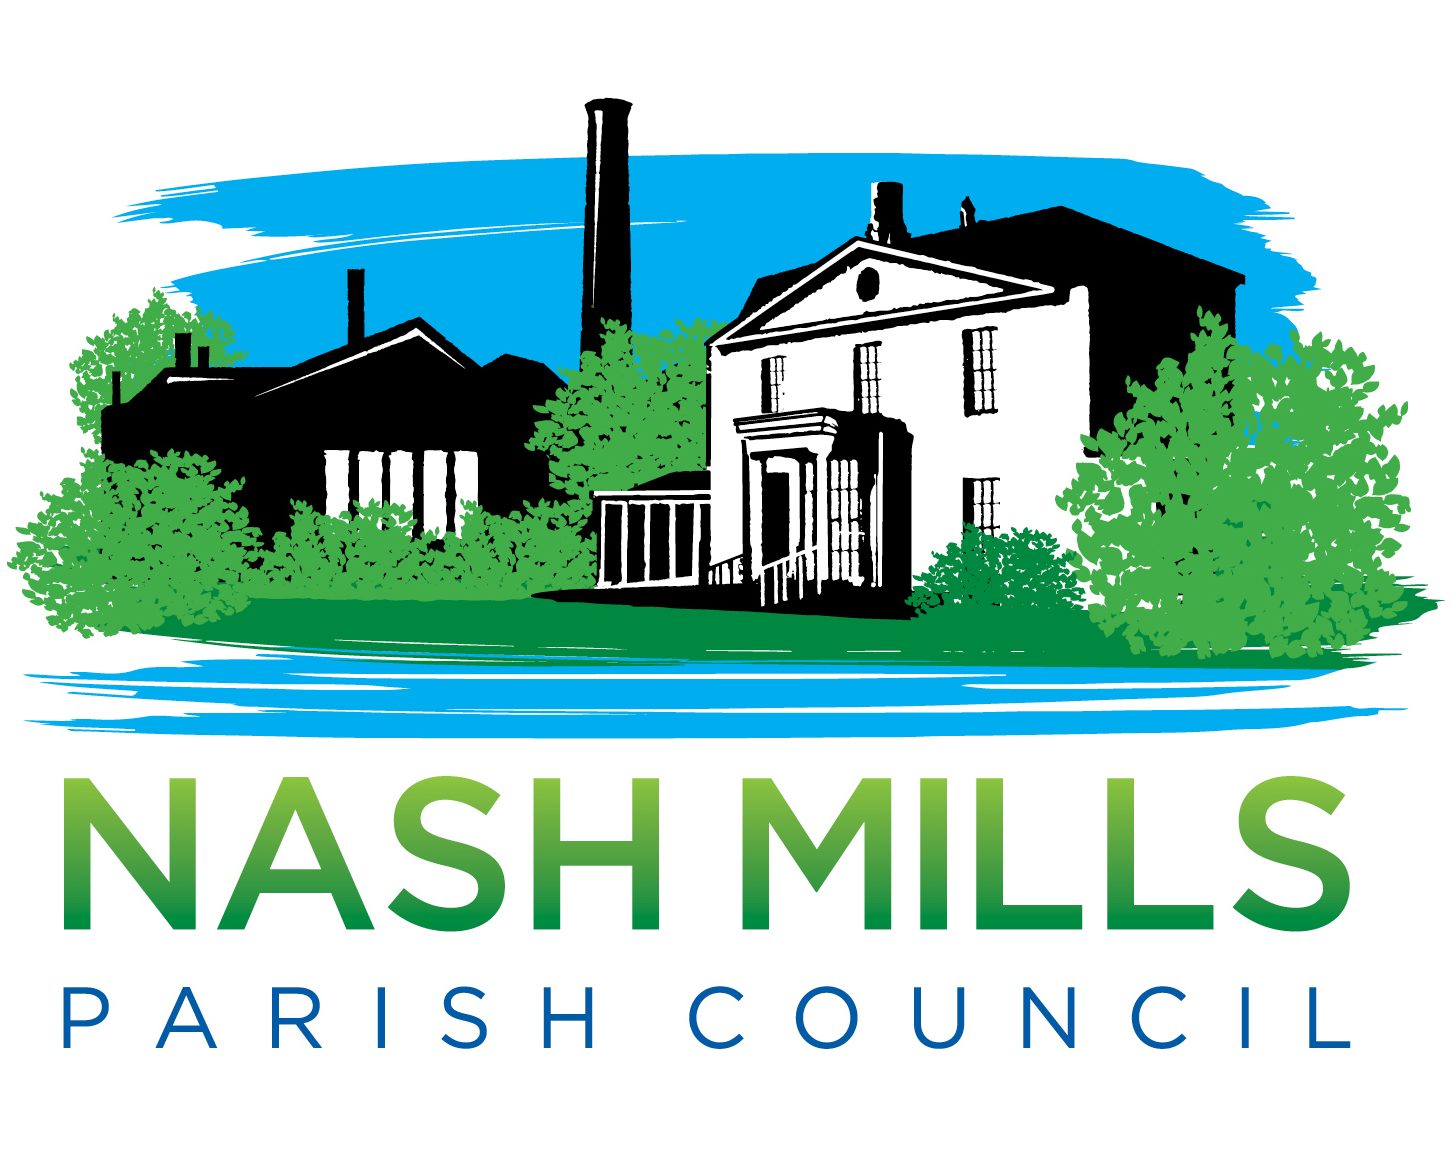 Nash Mills Parish Council